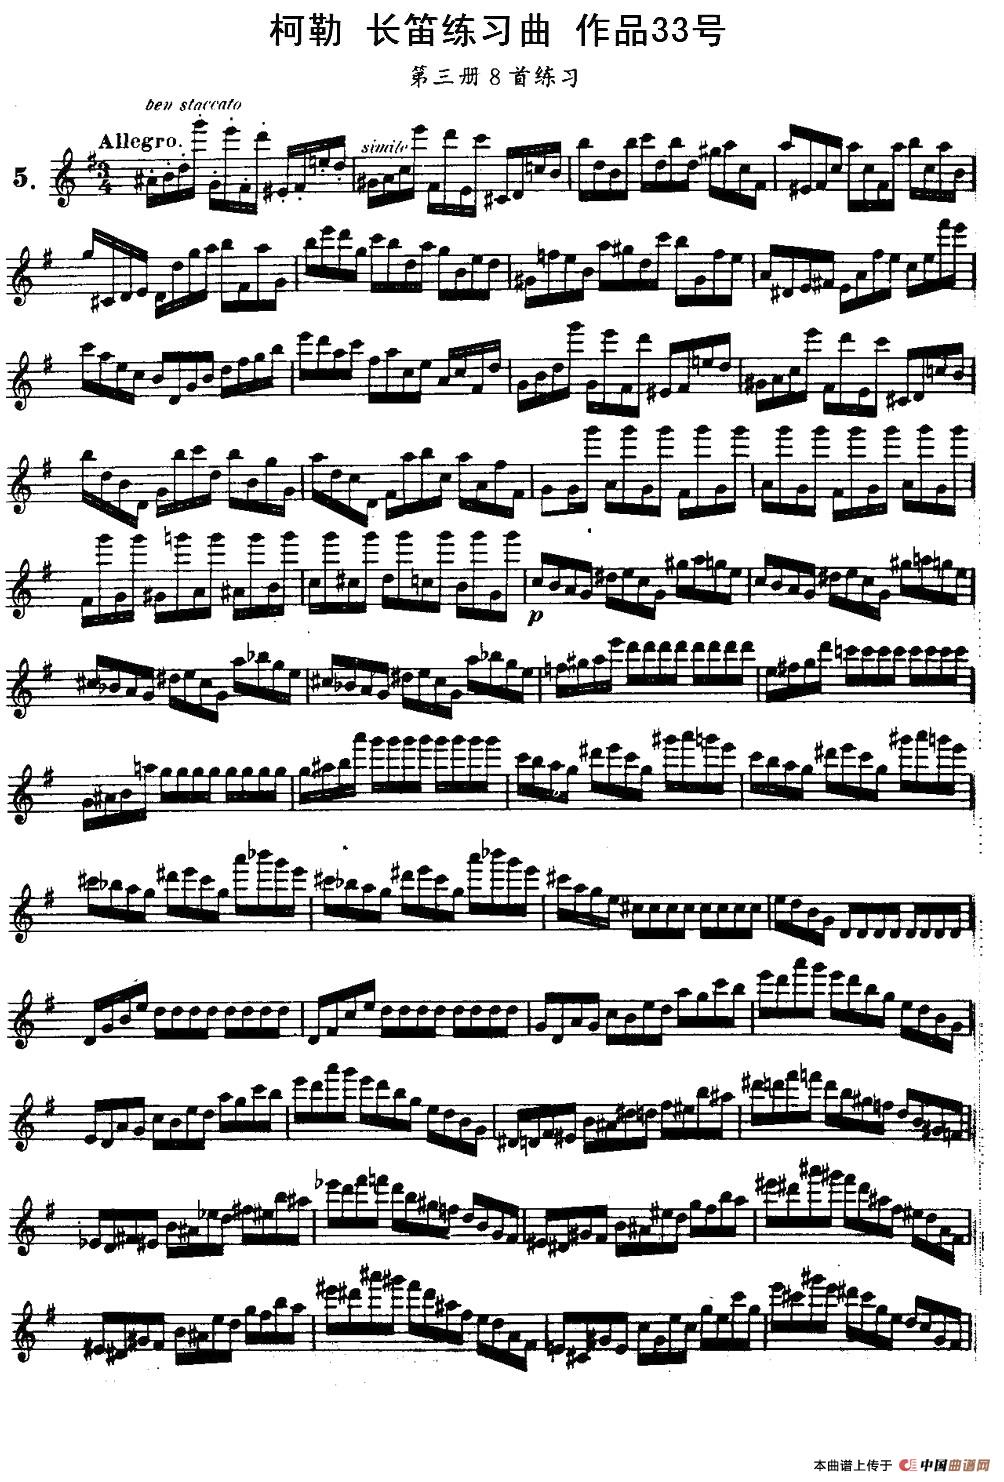 柯勒长笛练习曲作品33号（第三册）（5）